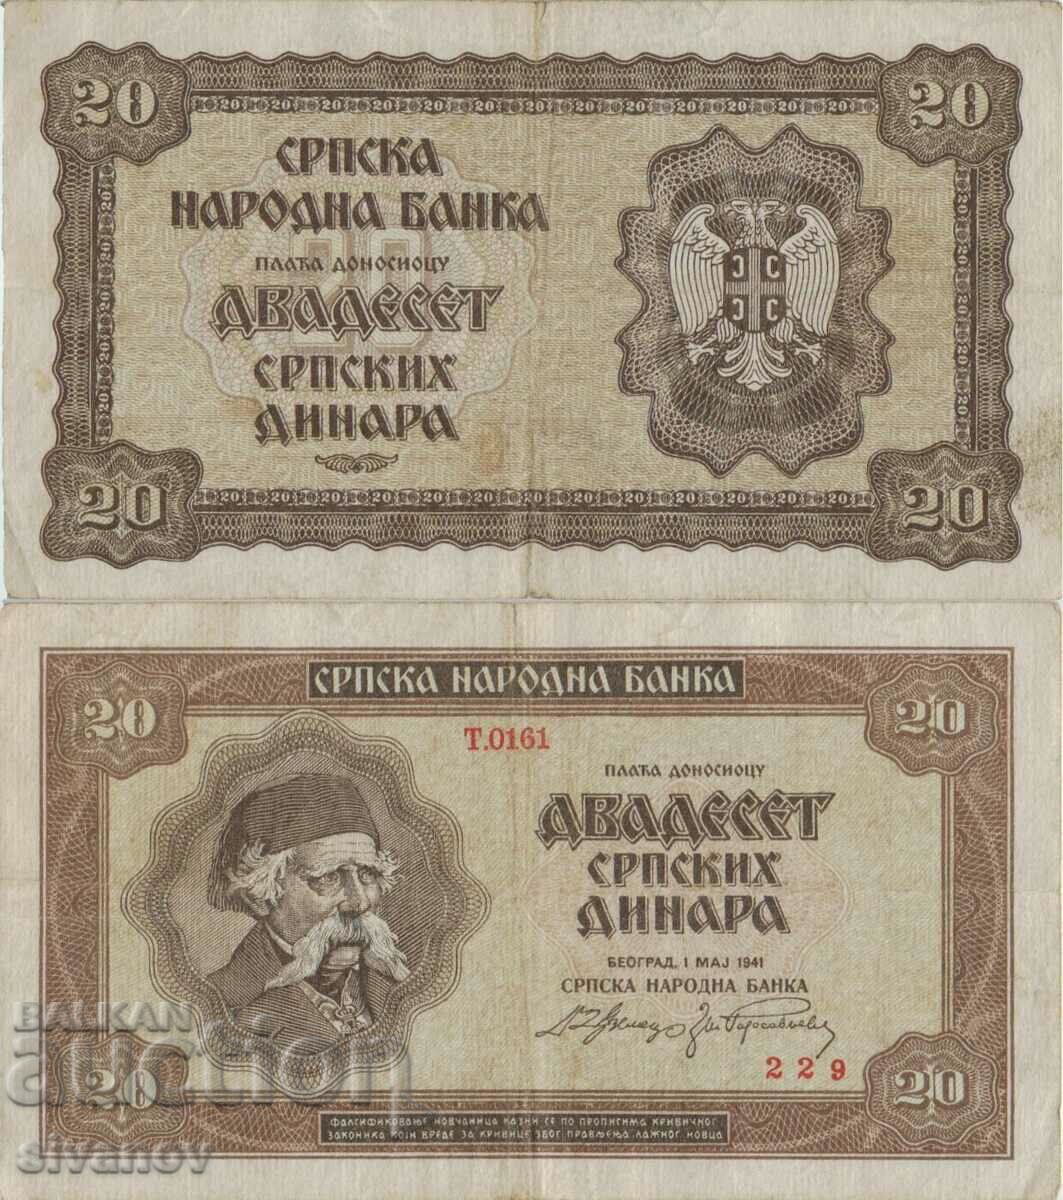 Serbia 20 dinari 1941 anul #4925